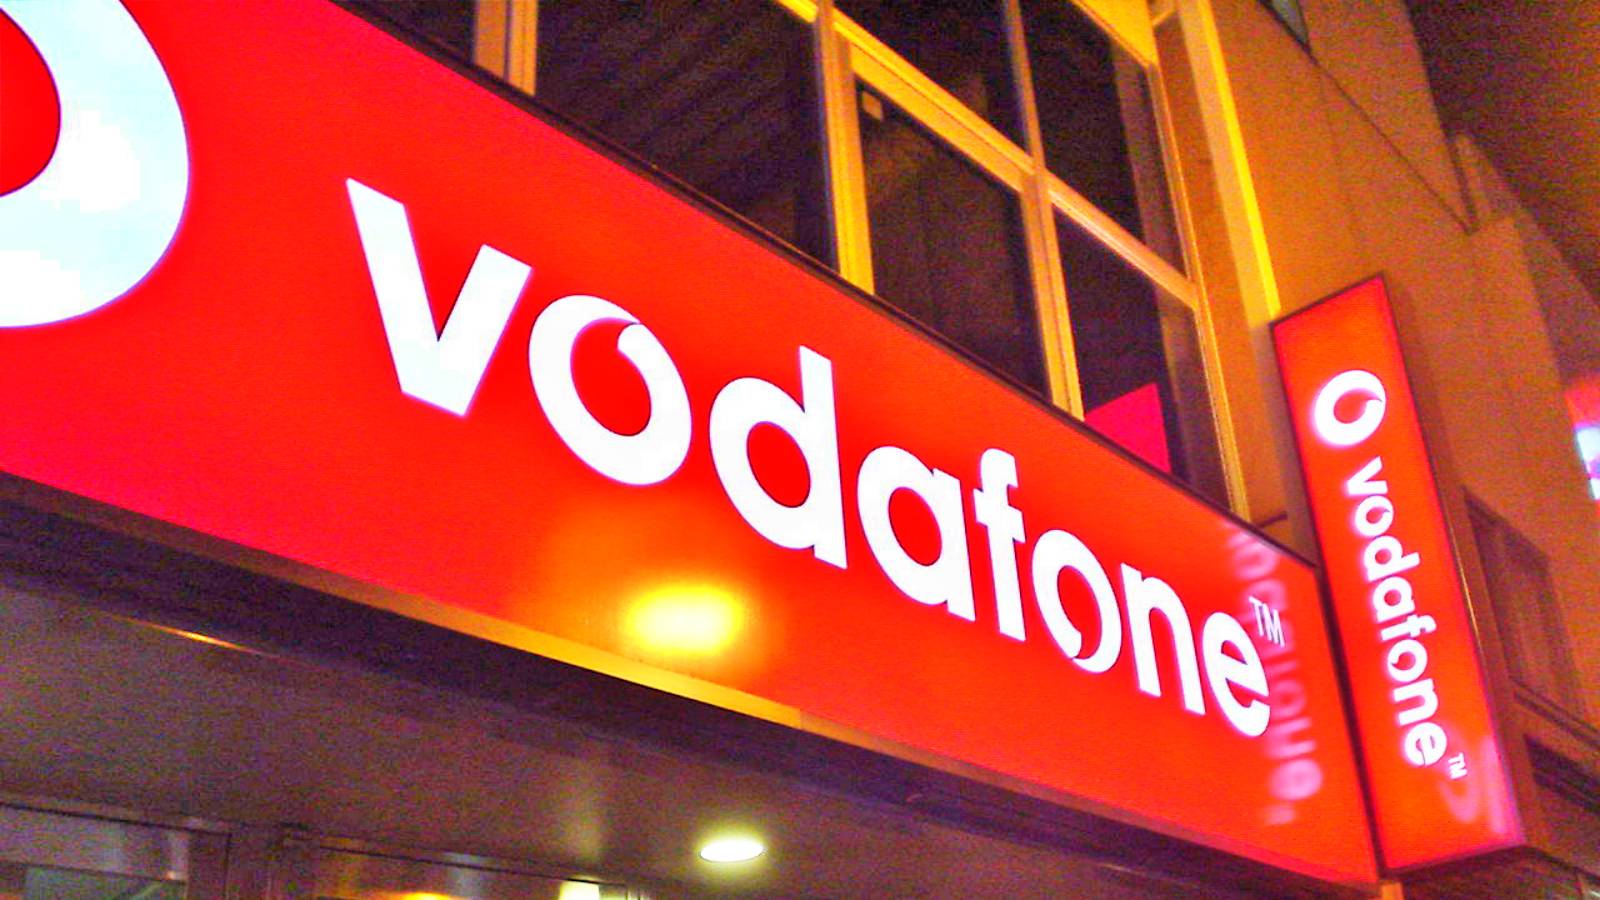 Vodafone VIGTIGT overraskelse annonceret til rumænere over hele landet